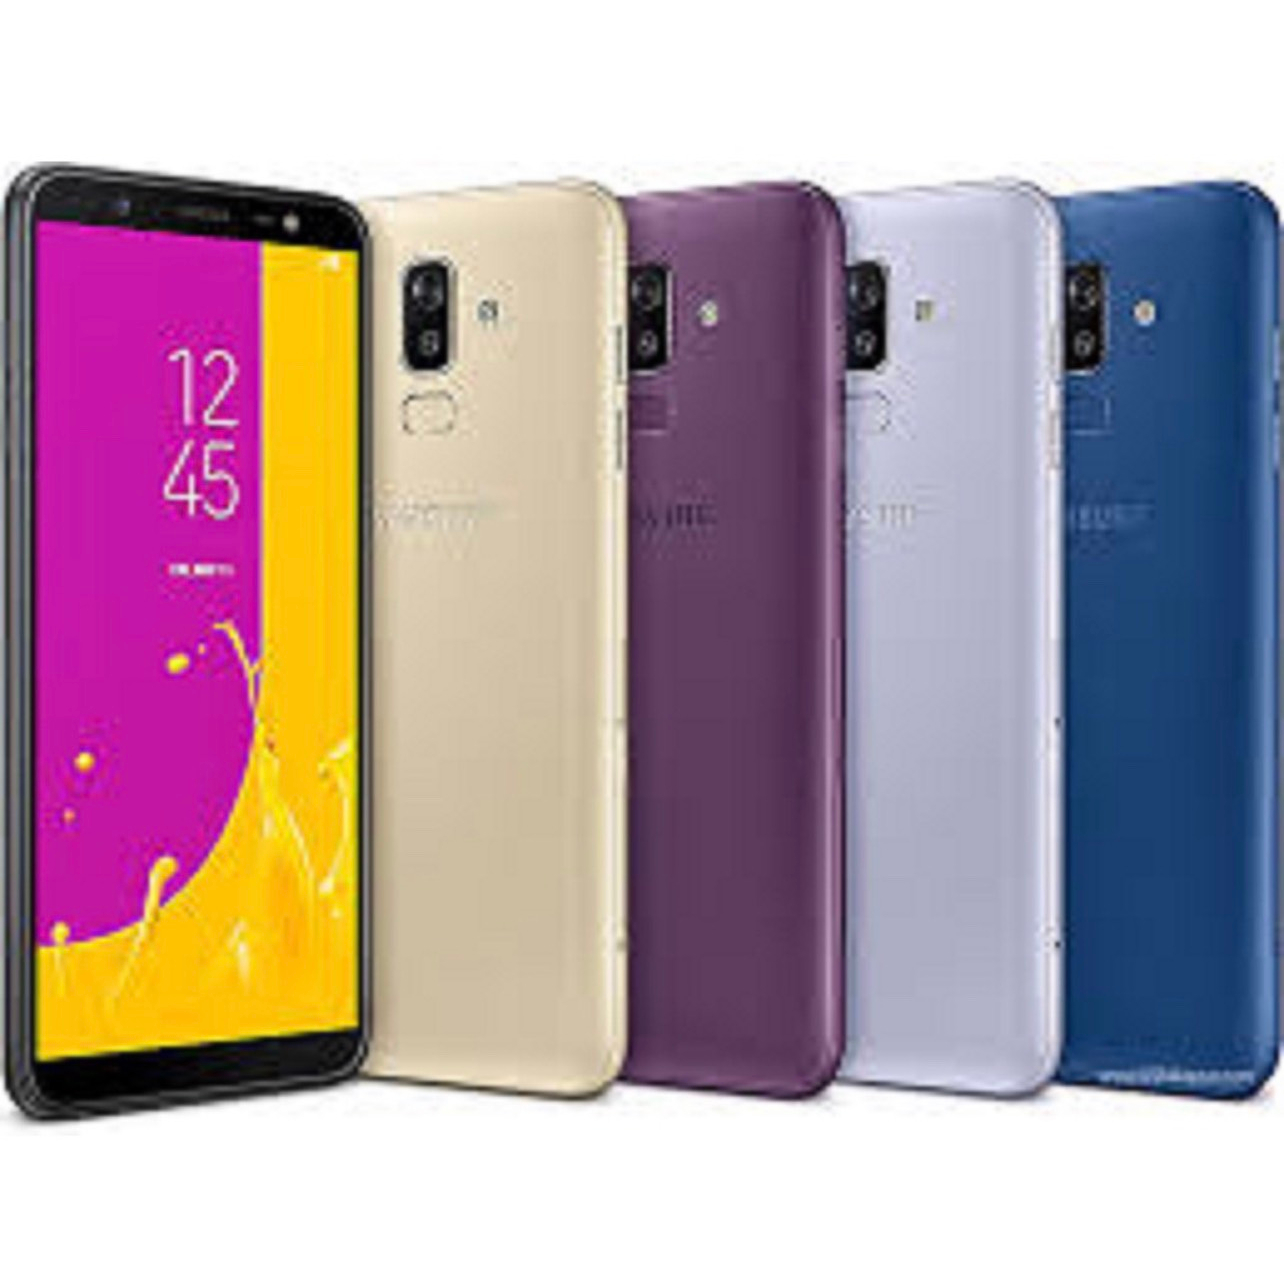 Điện thoại Samsung Galaxy J6 (2018) CHÍNH HÃNG, 2sim ram 3G bộ nhớ 32G, chiến Game lướt Wed Facebook